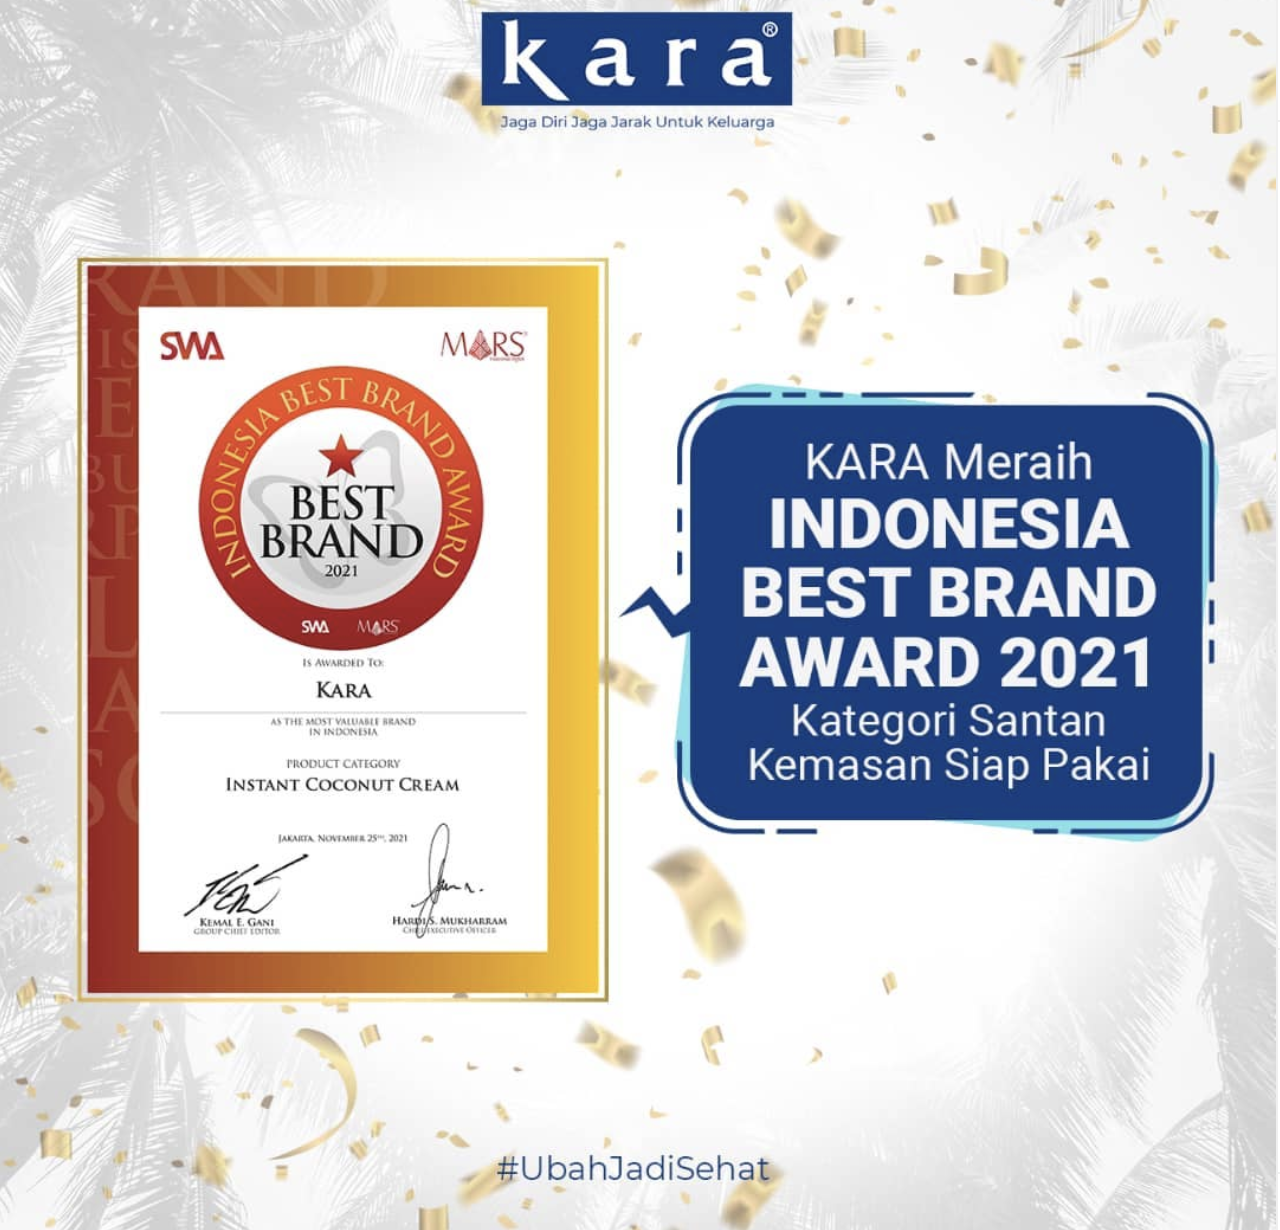 Terbukti Dicintai Masyarakat, KARA Kembali Raih Indonesia Best Brand Awards 2021